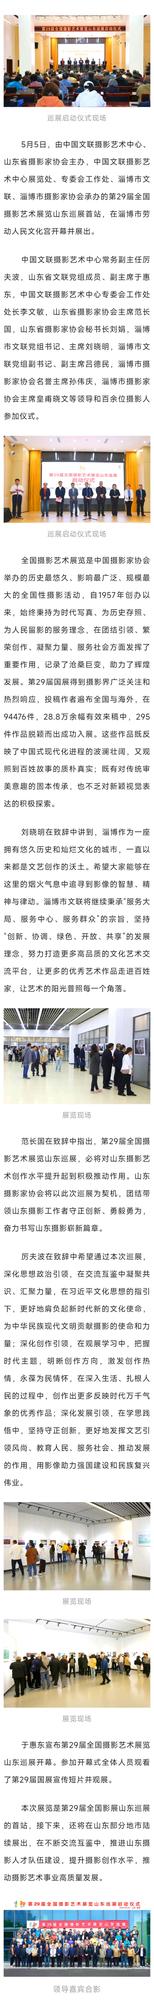 山东新闻 | 第29届全国摄影艺术展览山东巡展在淄博开幕